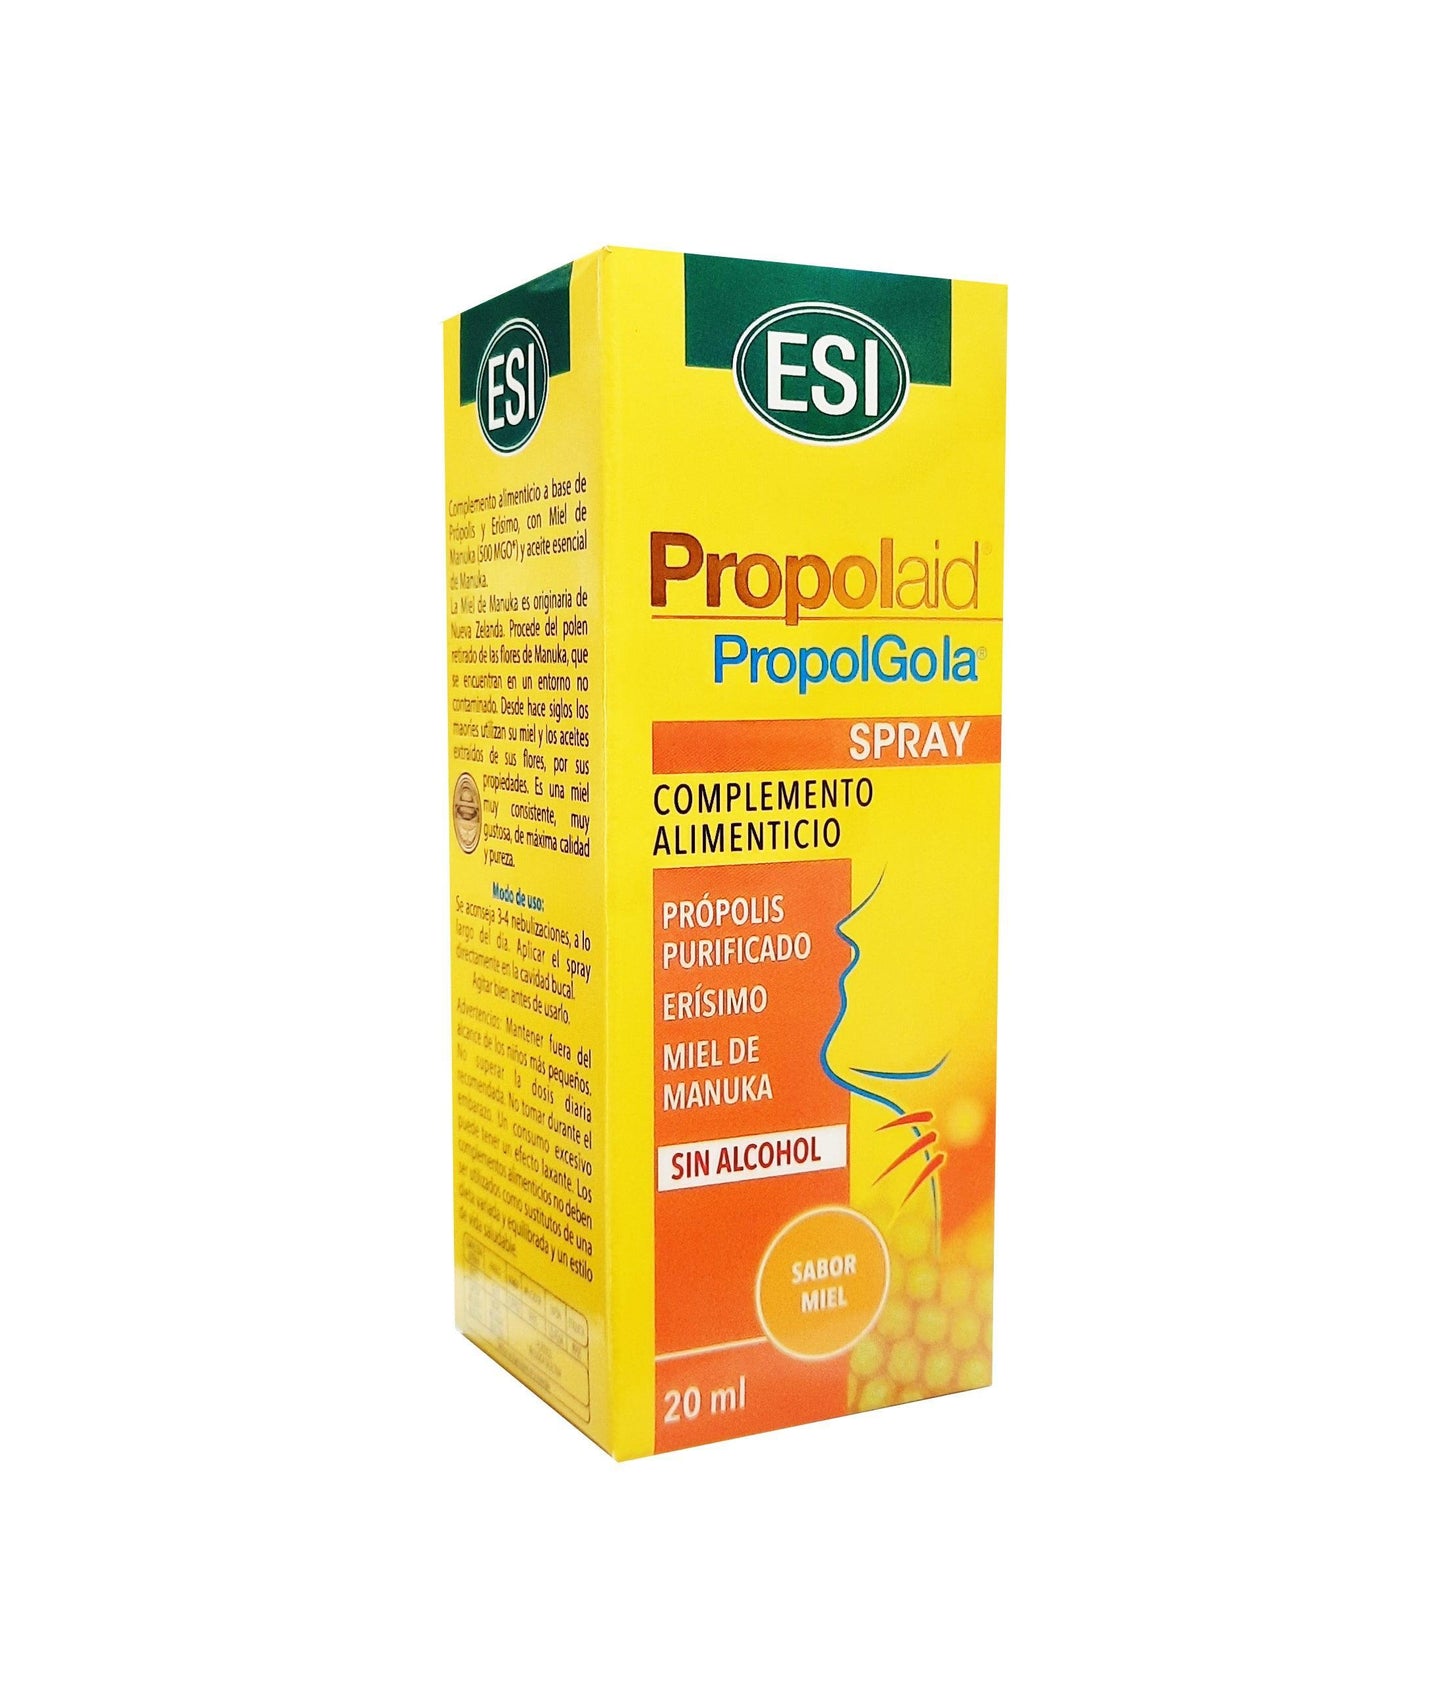 PropolGola spray  de ESI